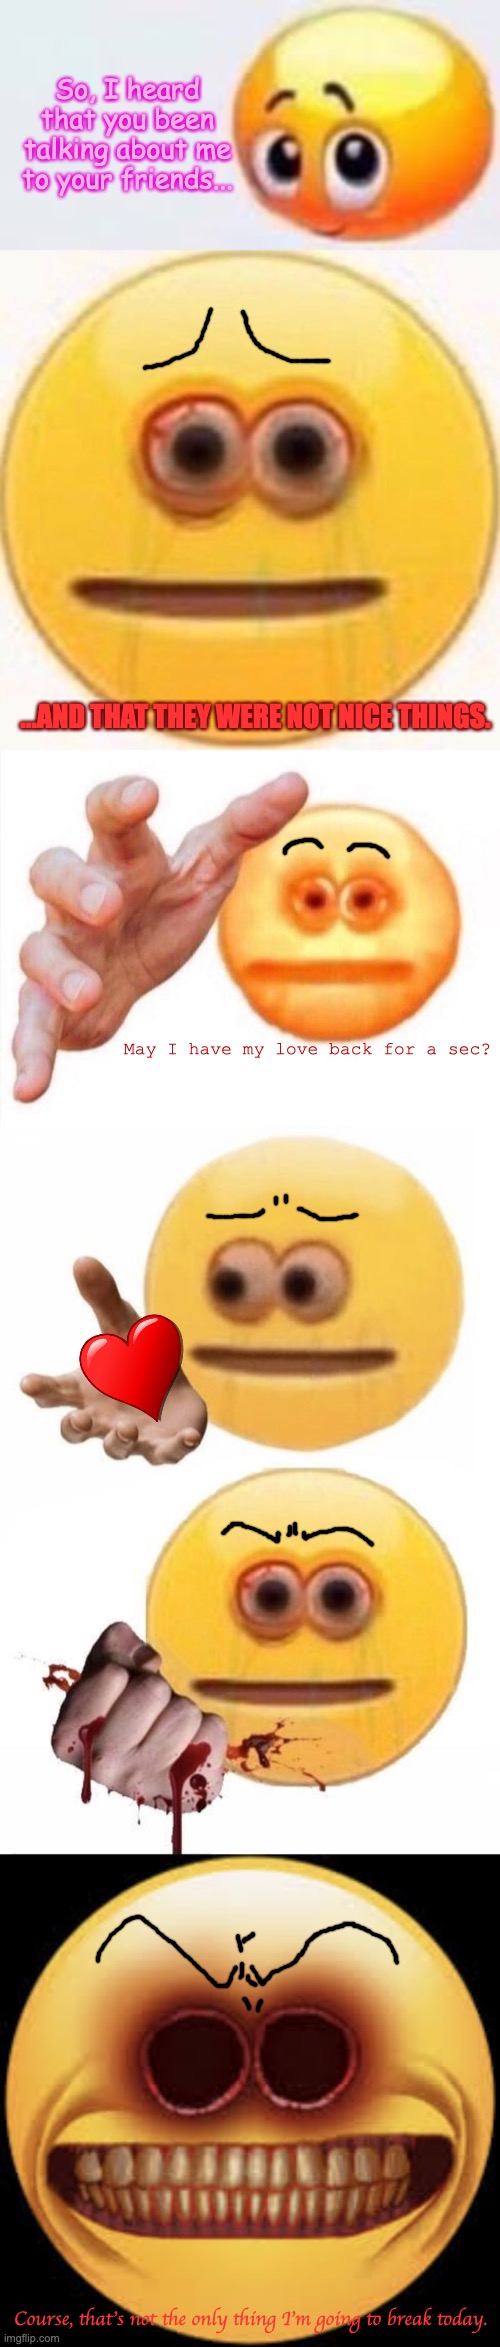 Cursed emoji 2 Meme Generator - Imgflip